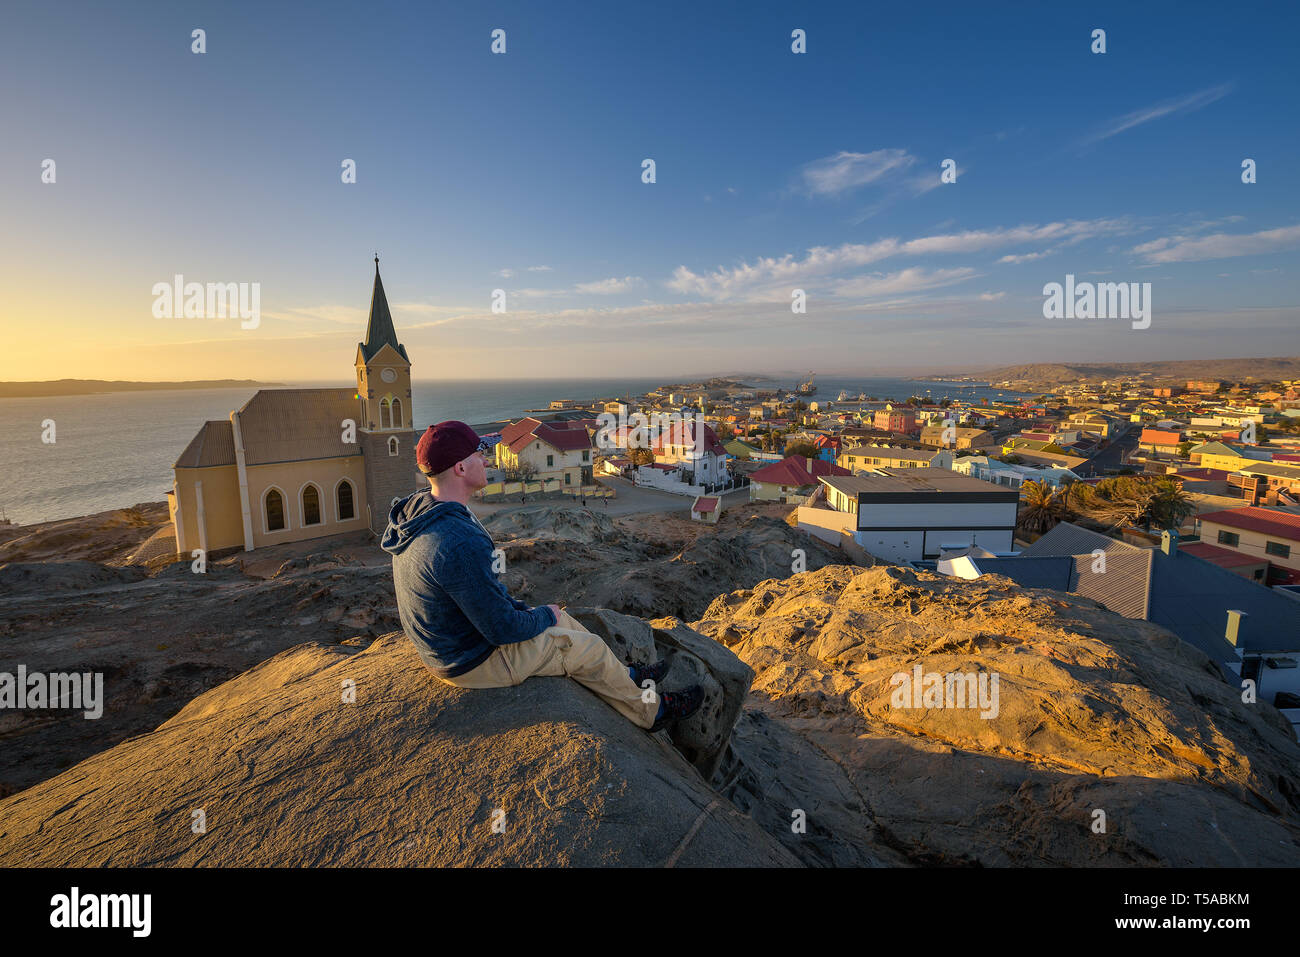 Turista en la cima de una colina, disfruta de la vista de Luderitz en Namibia al atardecer Foto de stock